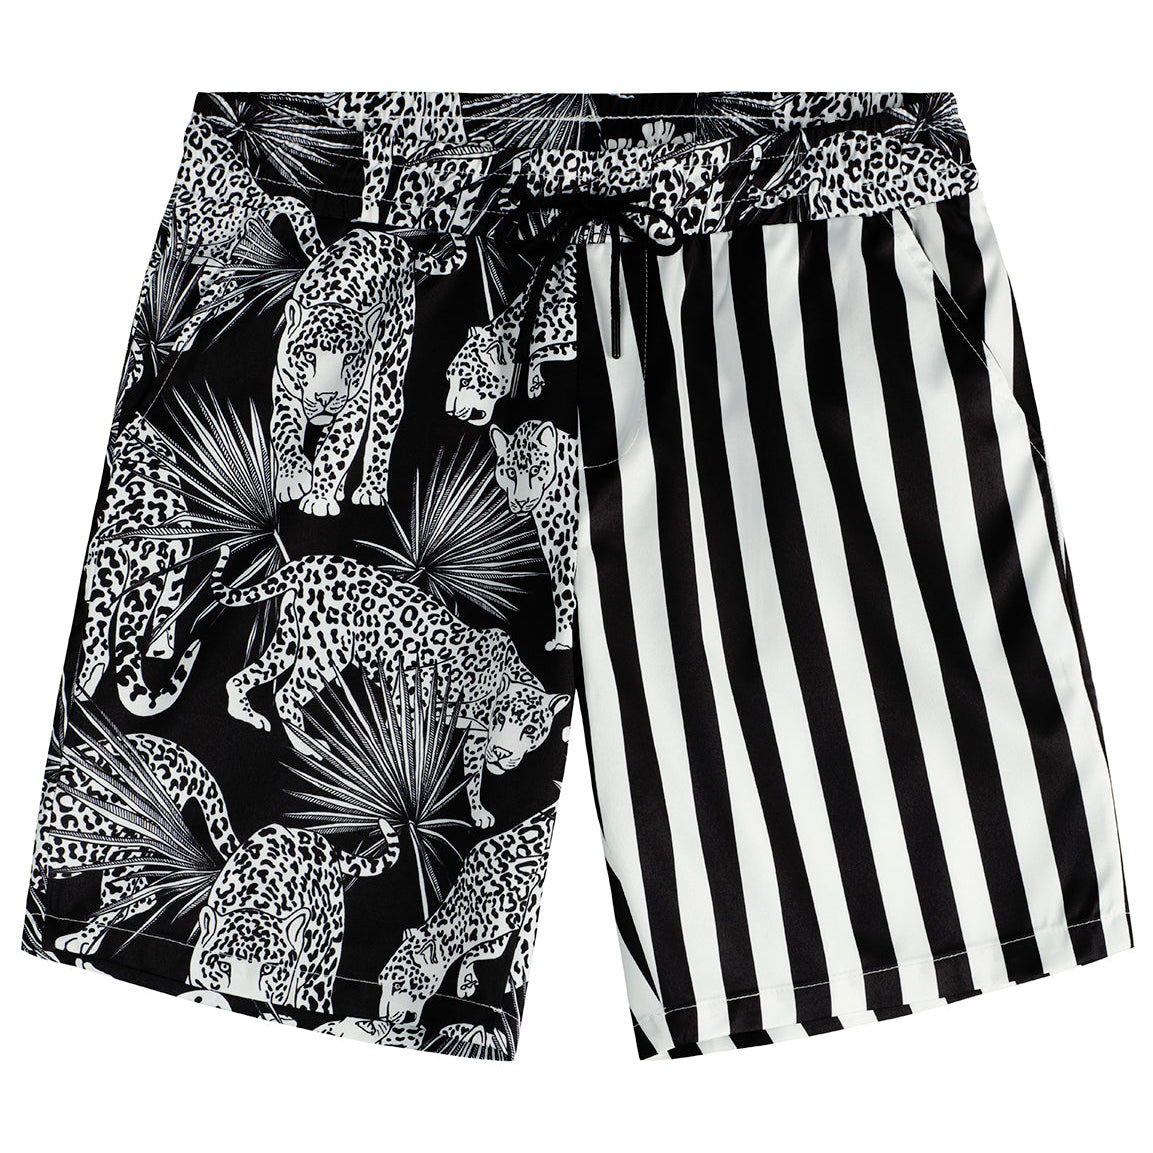 Men's Tiger and Black Striped Animal Beach Hawaiian Aloha Shorts